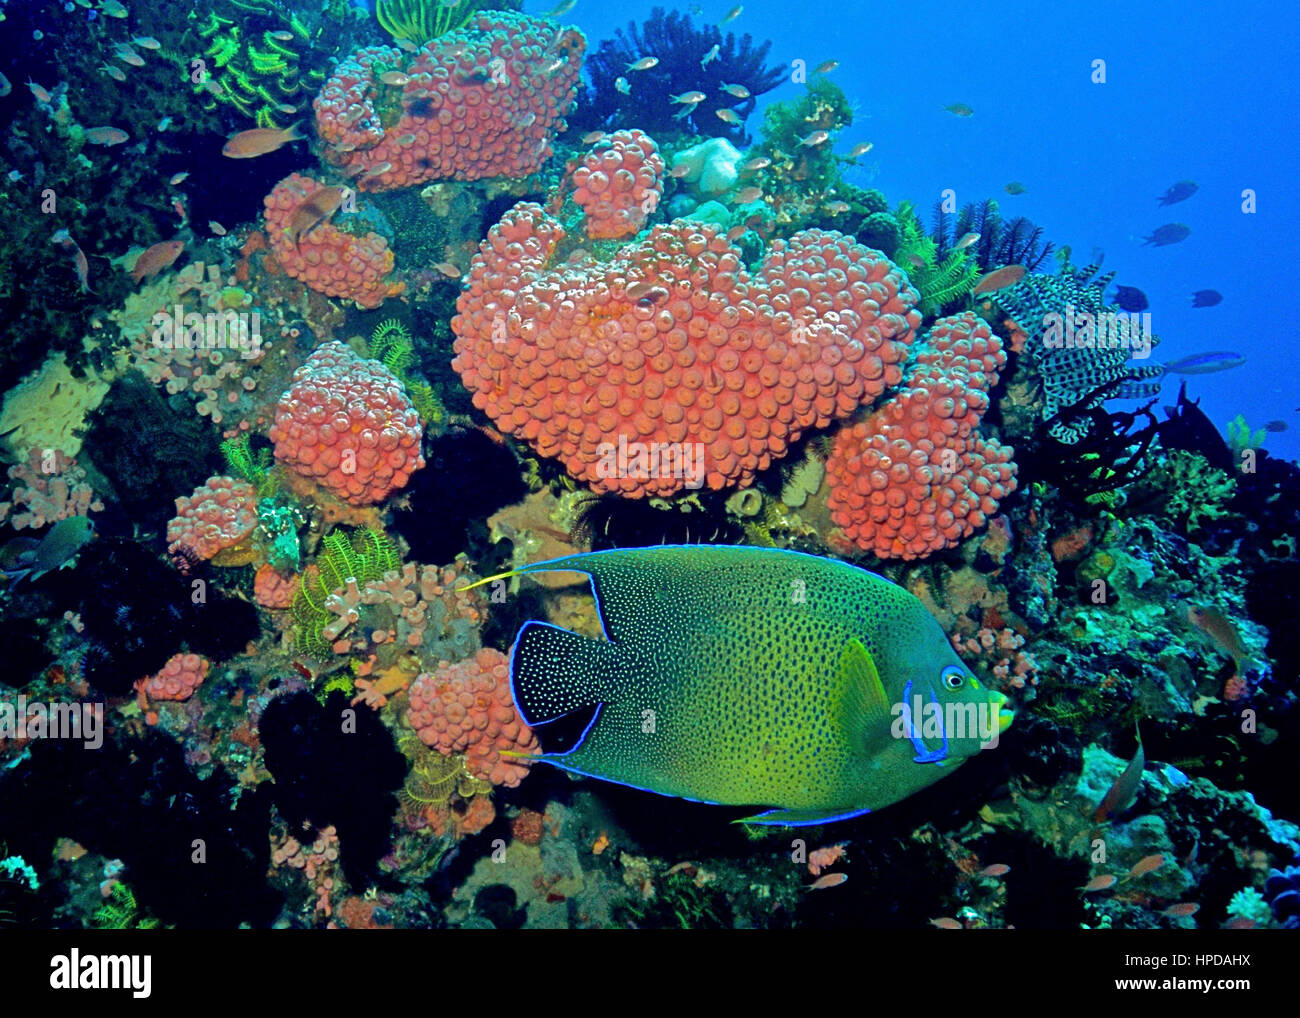 Un coran angelfish (Pomacanthus semicirculatus) natation passé un récif coloré avec de nombreux coraux pocillopora damicornis (framboise). Bali, Indonésie. Banque D'Images